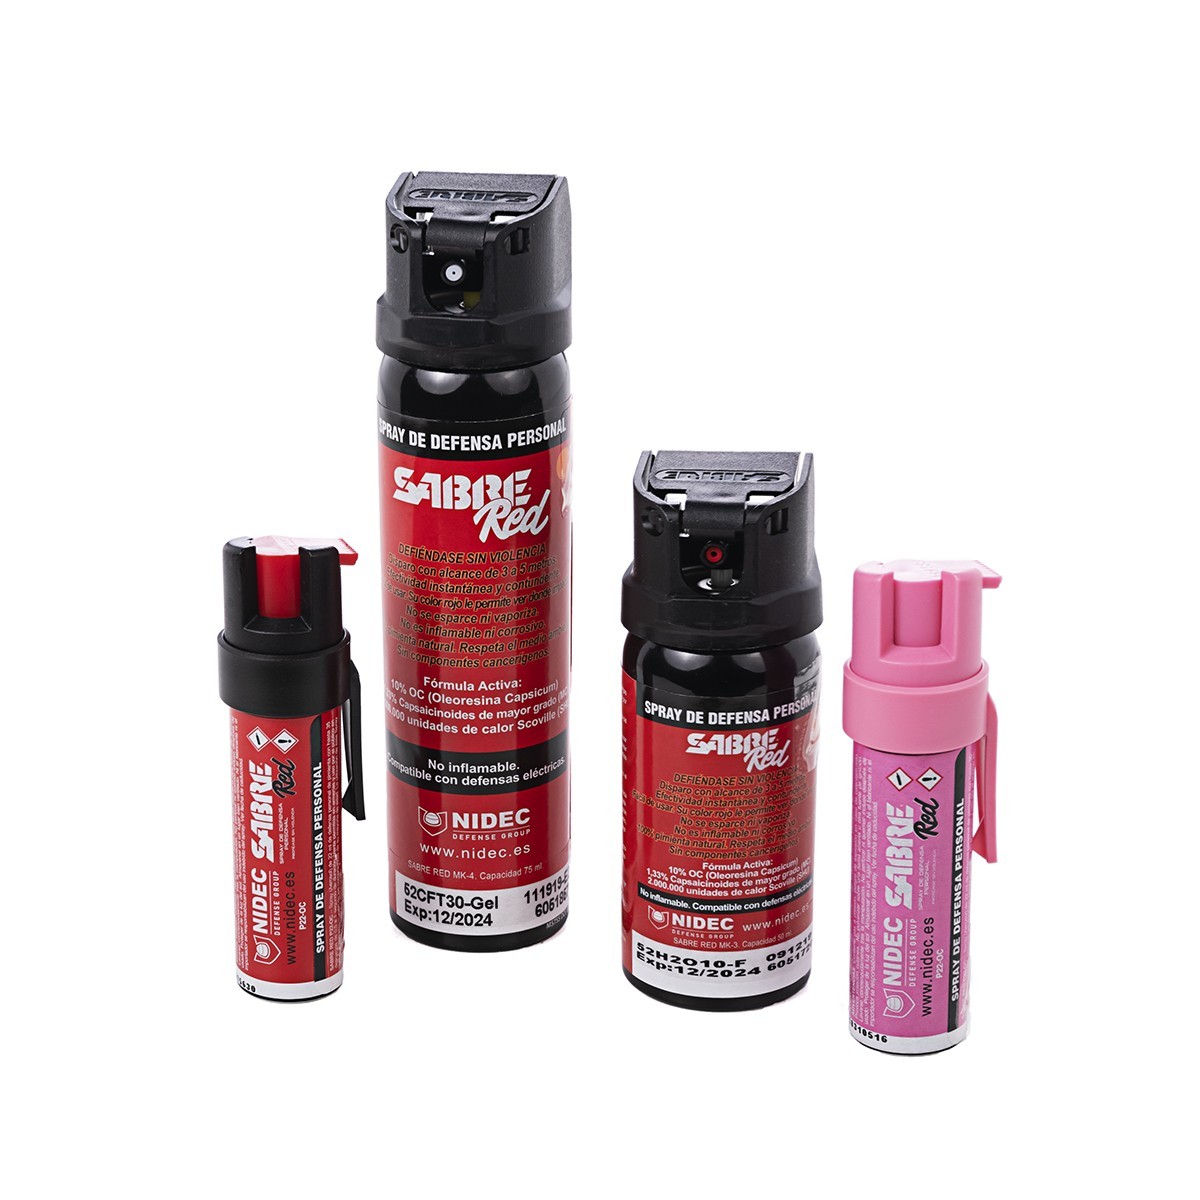 Spray de Pimienta para defensa personal - Spray